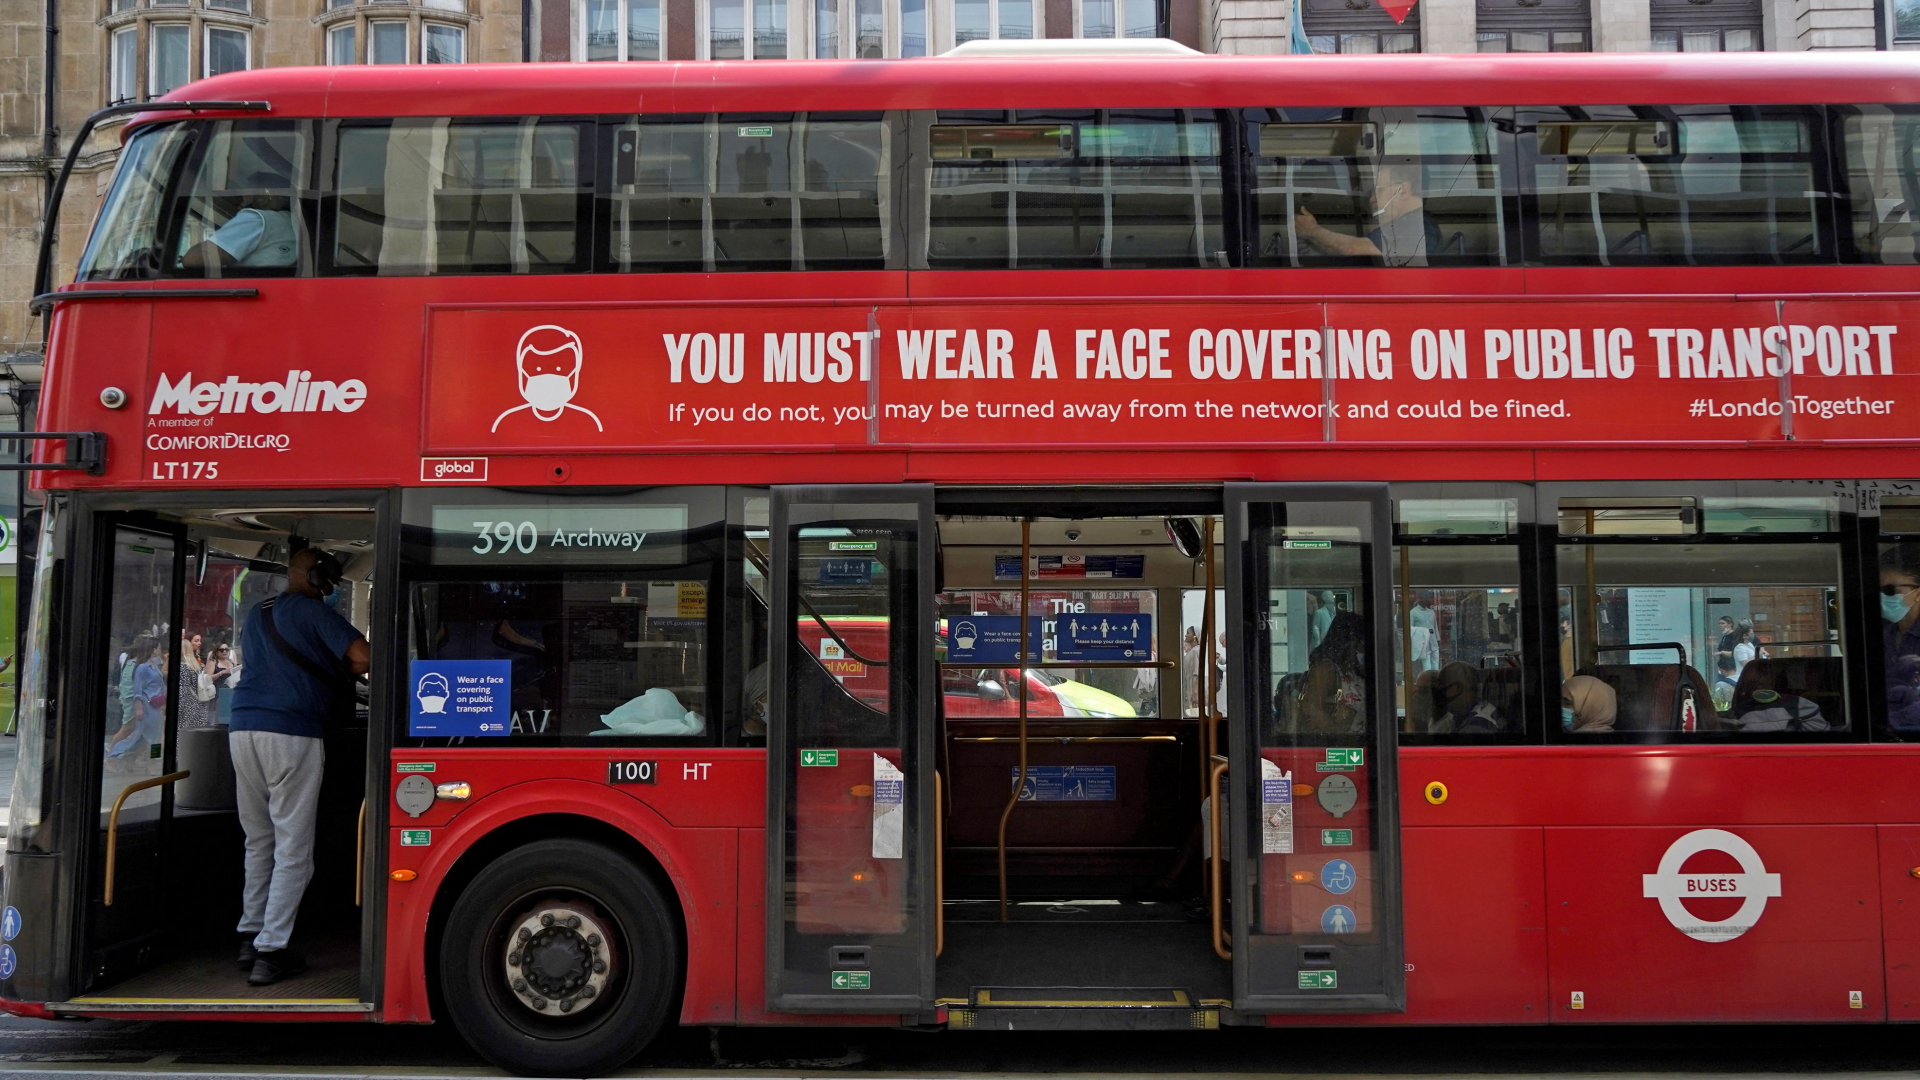 Auf einem der typischen Londoner Doppeldeckerbusse wird auf die Maskenpflicht hingewiesen.